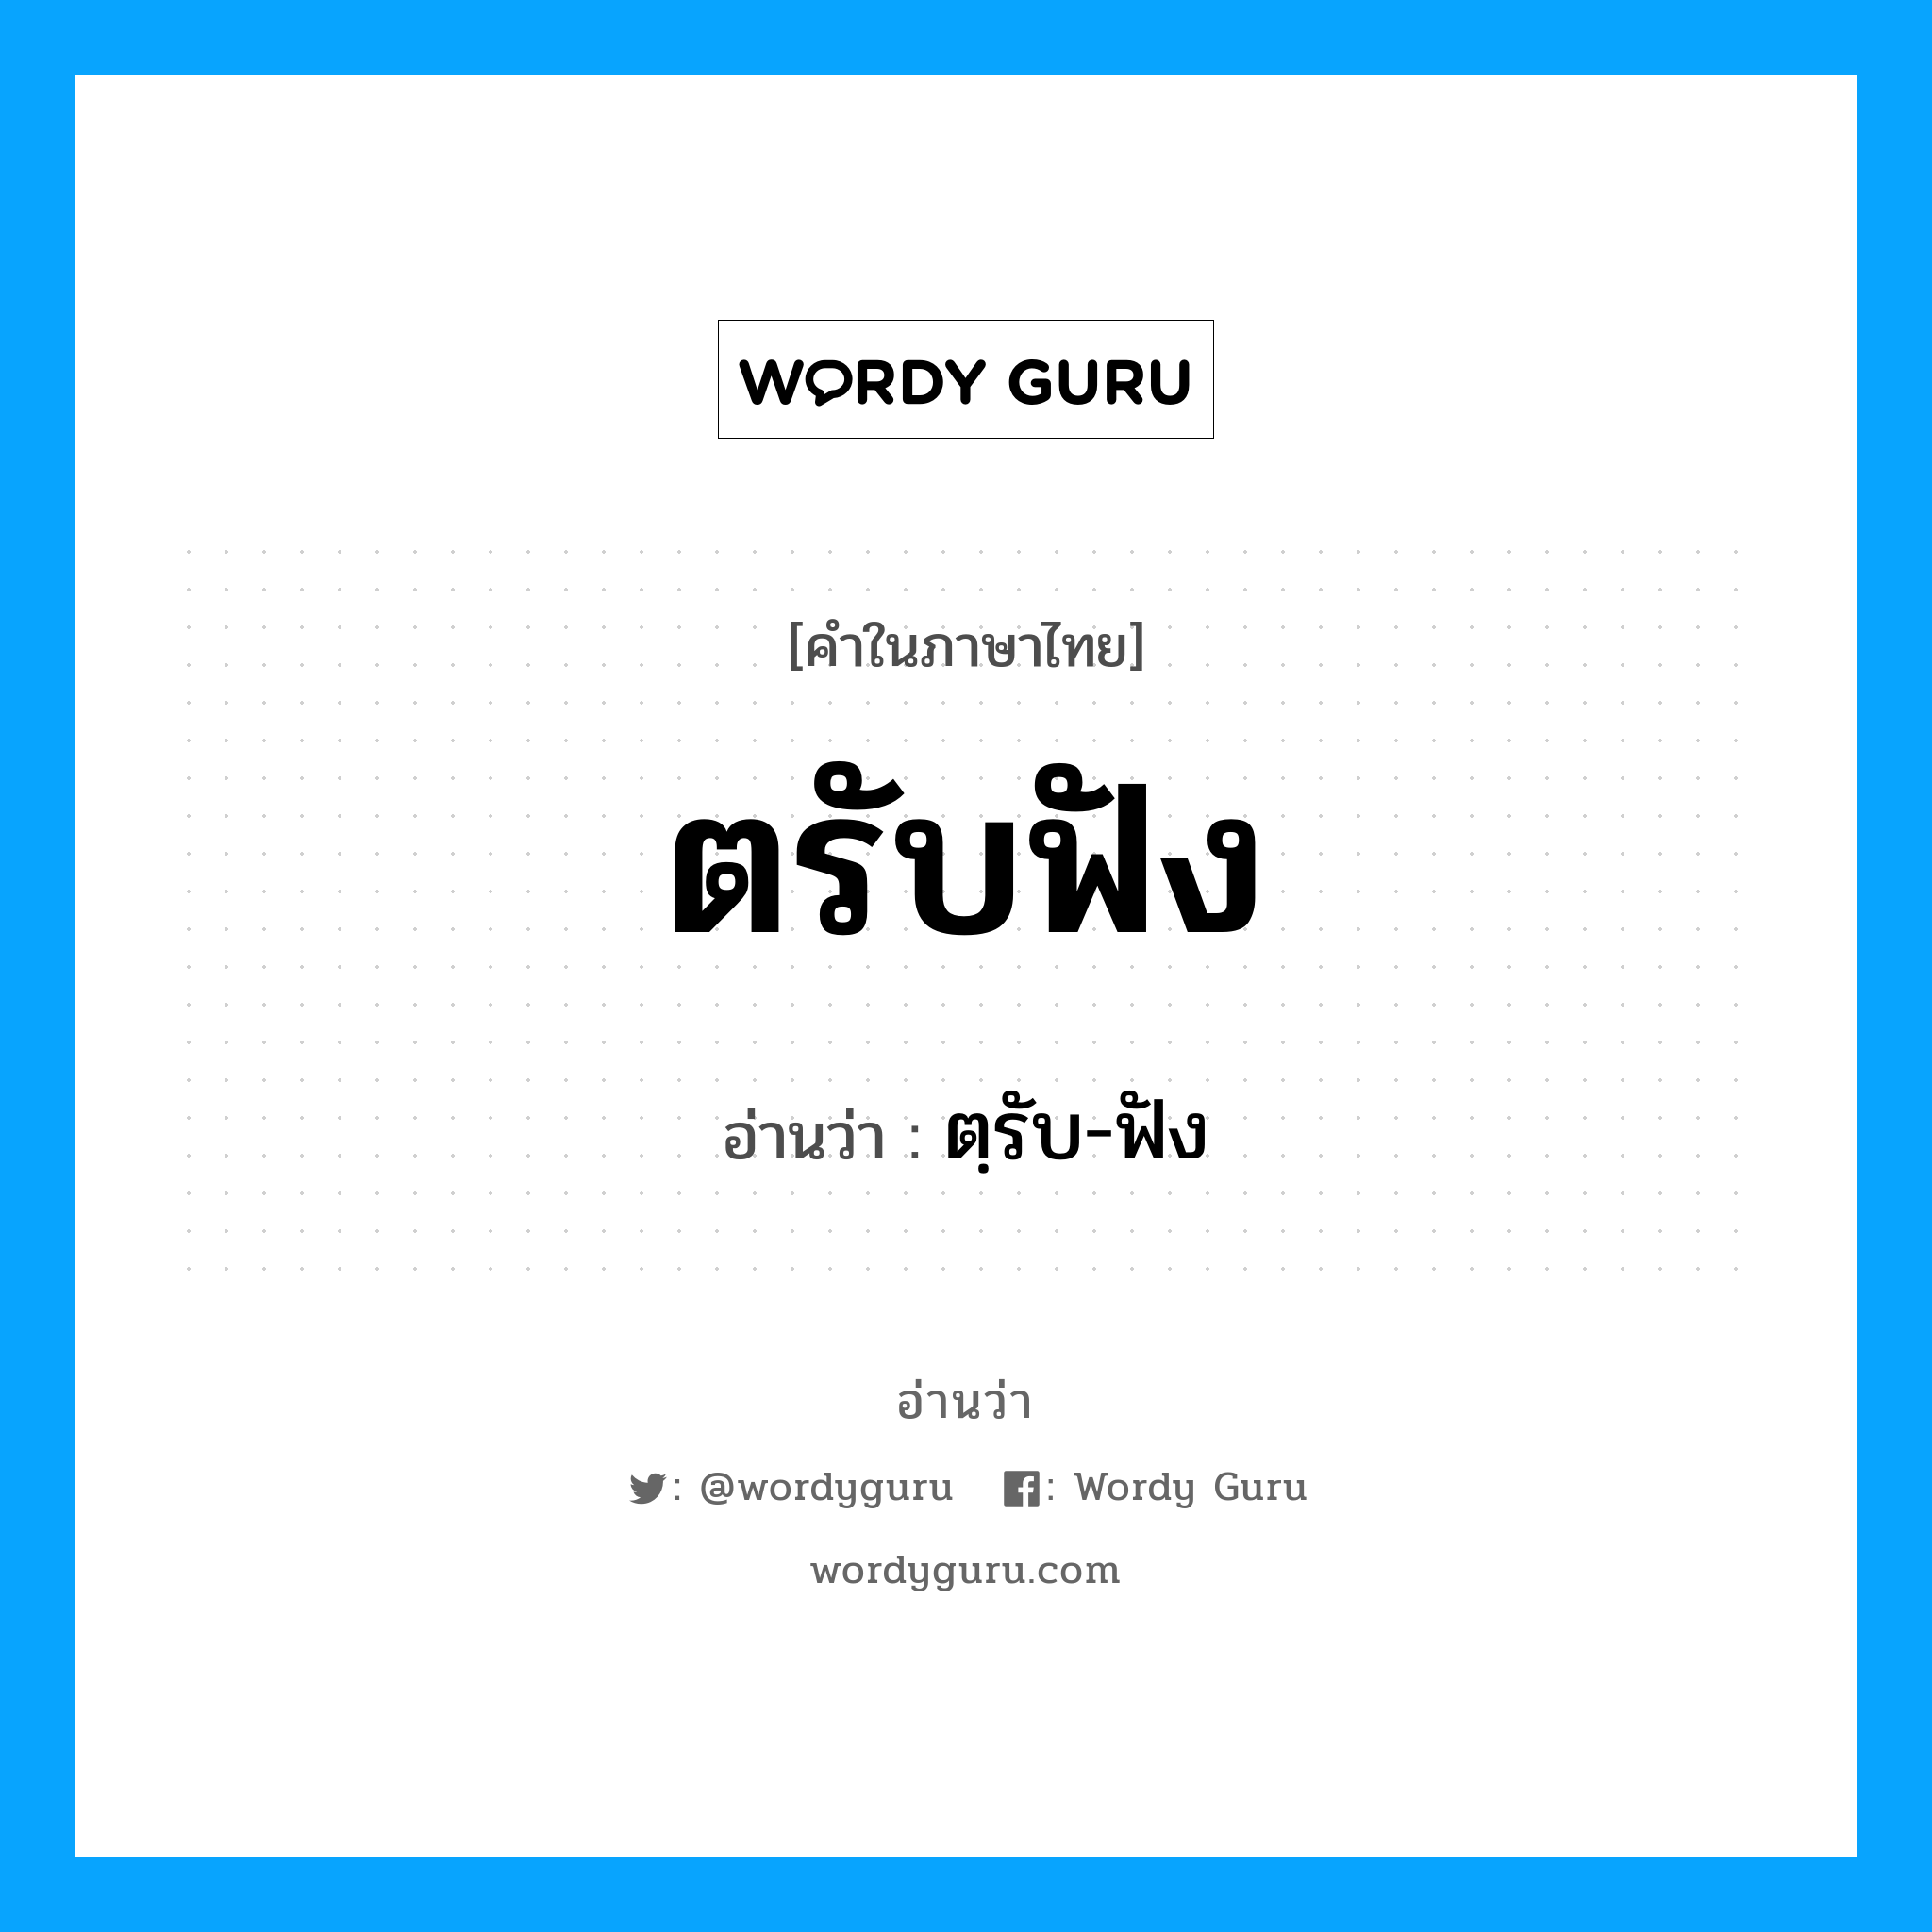 ตฺรับ-ฟัง เป็นคำอ่านของคำไหน?, คำในภาษาไทย ตฺรับ-ฟัง อ่านว่า ตรับฟัง